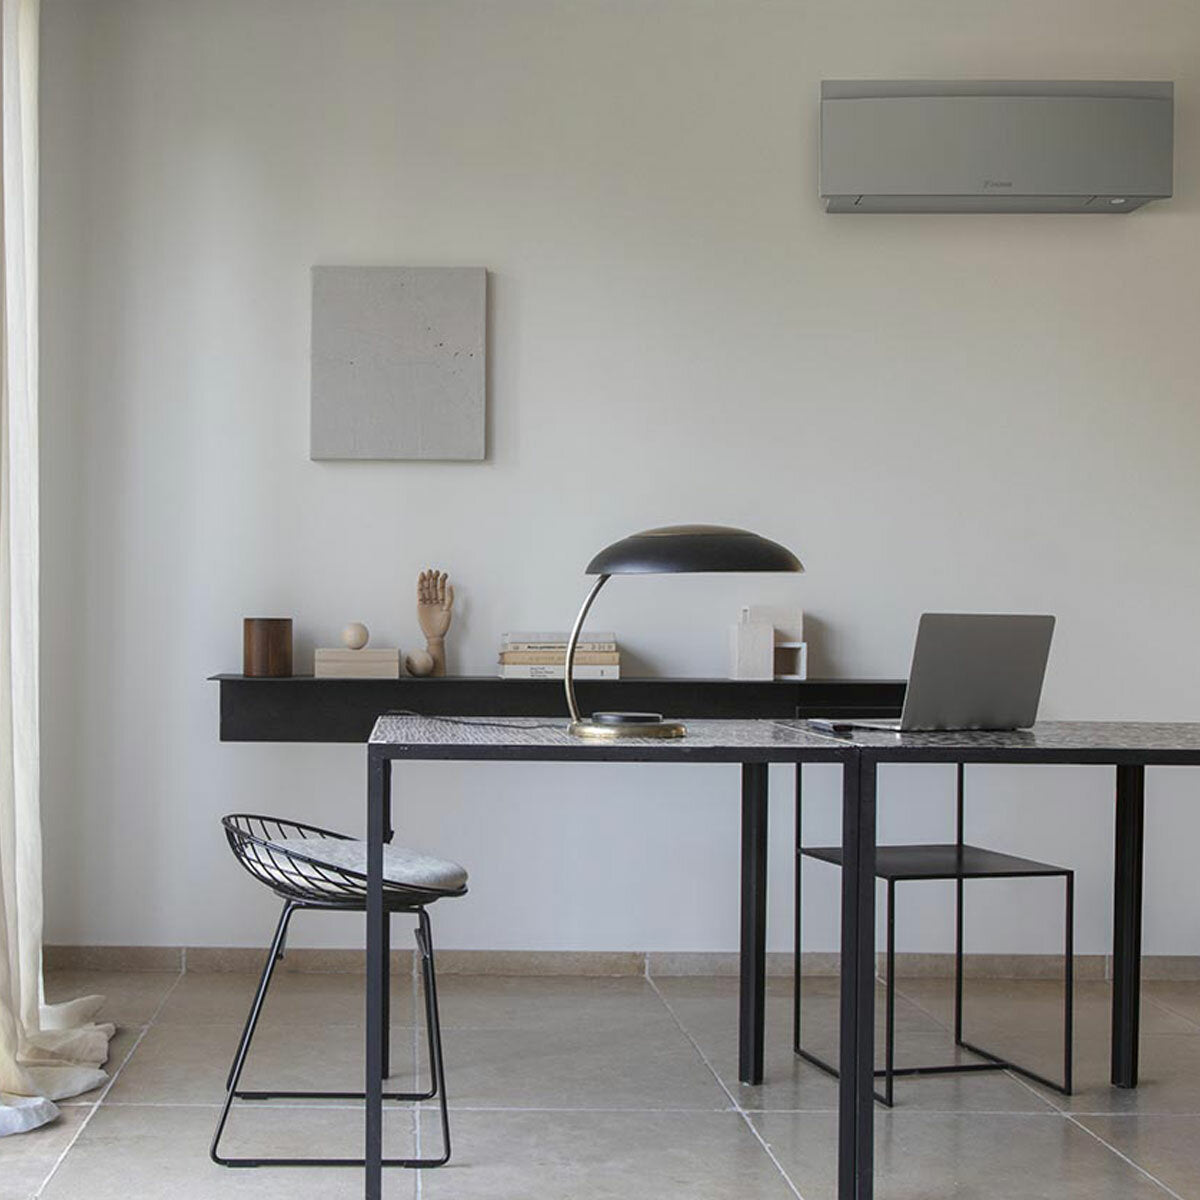 Daikin Emura 3 trial split air conditioner 7000+7000+12000 BTU inverter A++ wifi outdoor unit 5 kW Silver